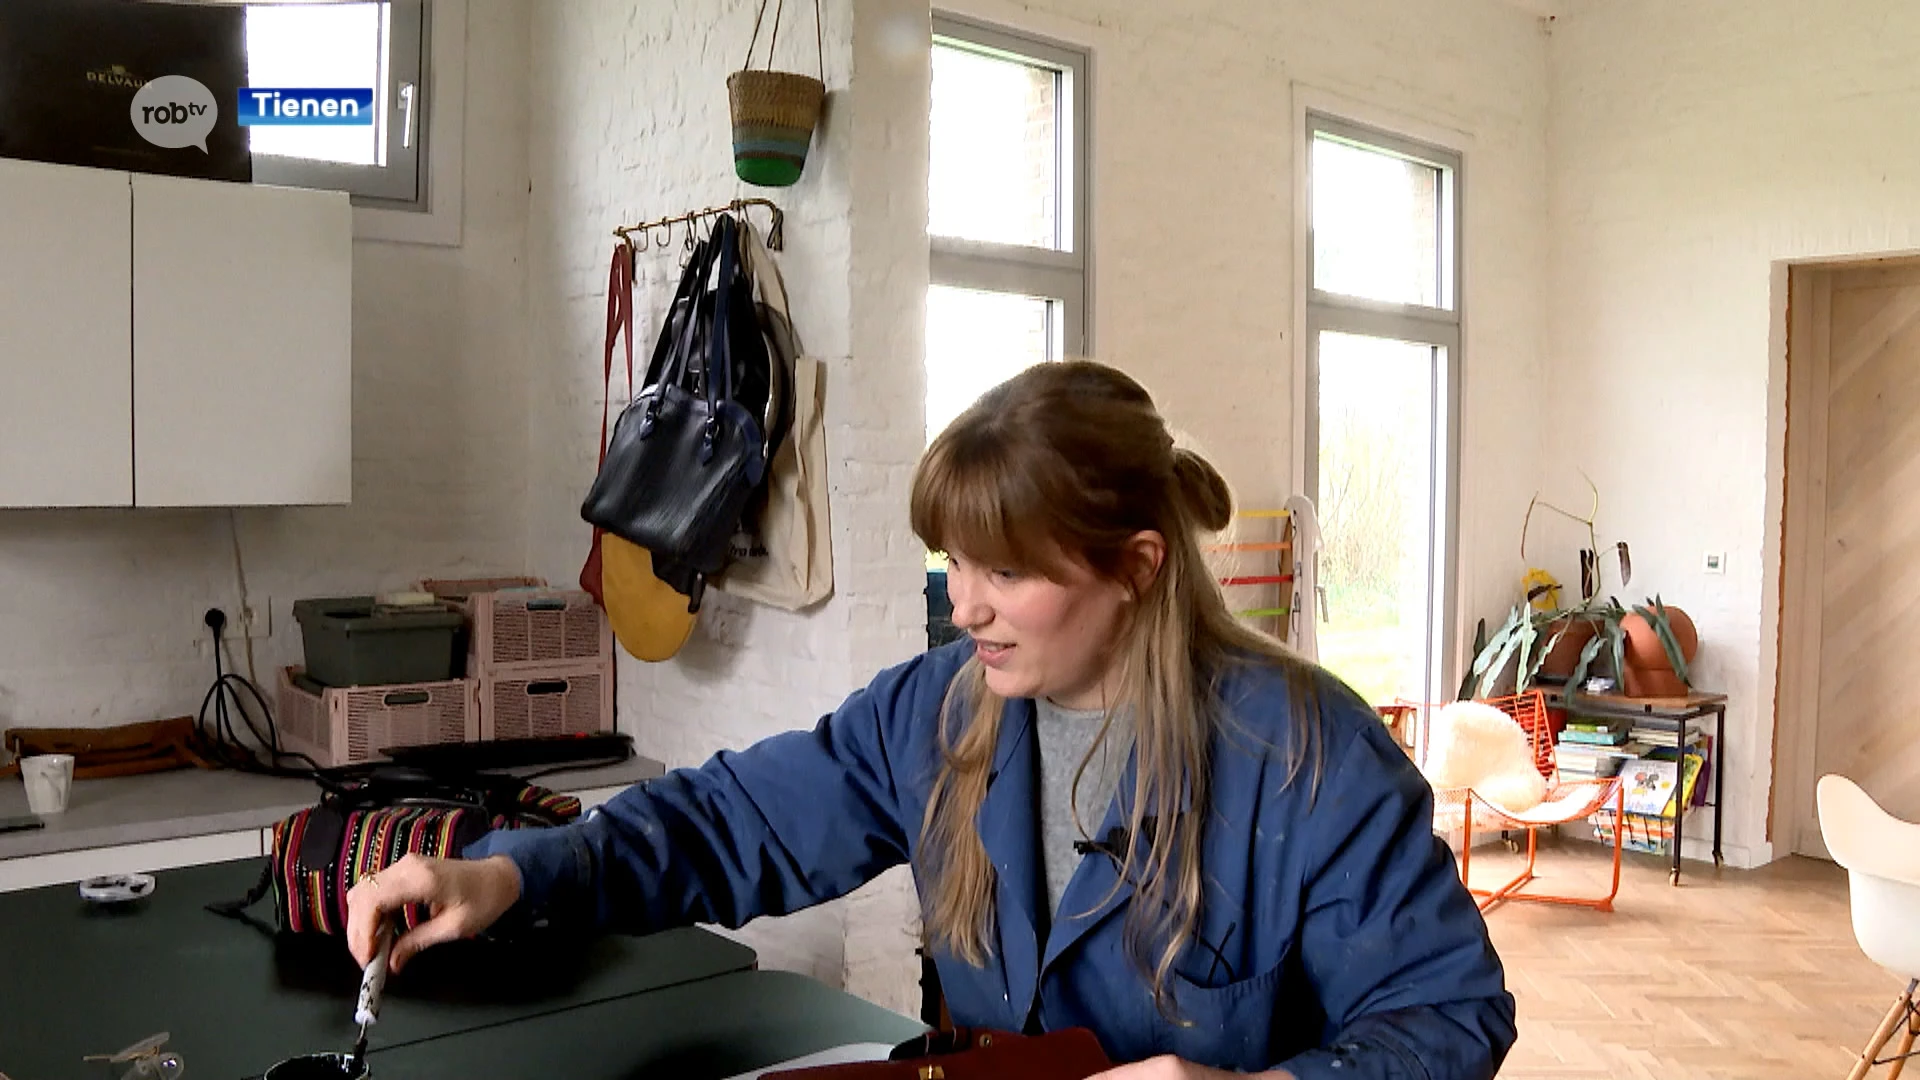 Stefanie Weckx of "Mémé Delvaux" restaureert vintage Delvaux handtassen: "In één jaar tijd 600 tassen onder handen genomen"